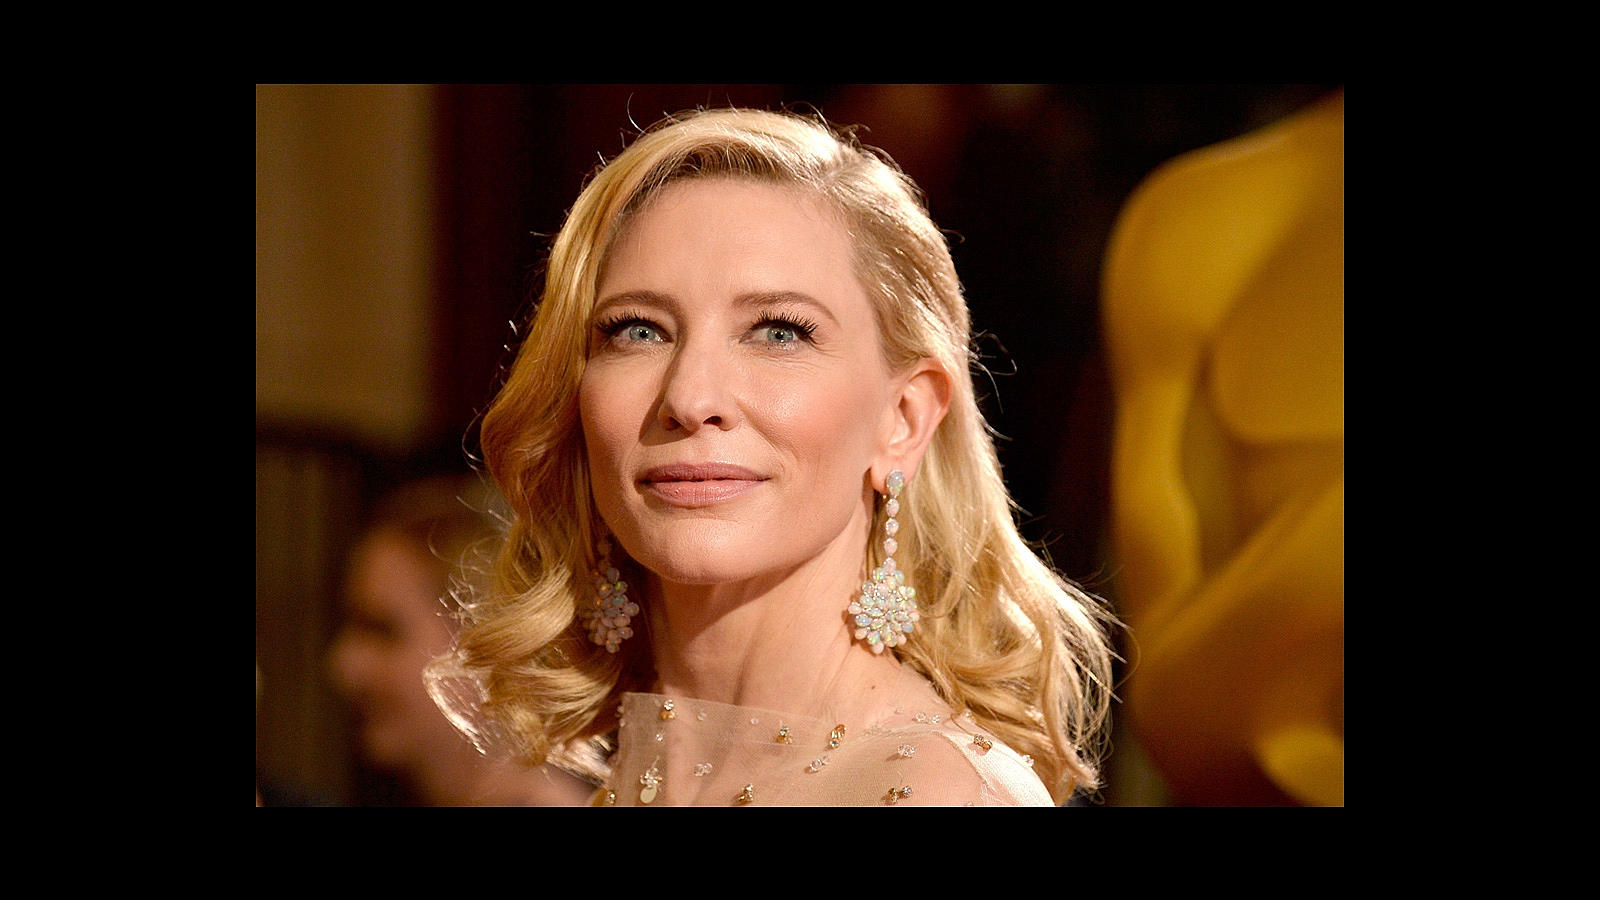 Cate Blanchett aprovecha su presencia en los eventos del cine para criticar la falta de historias escritas por y para mujeres así como el empeño de muchos periodistas en fijarse más en la marca de su vestido que en sus trabajos interpretativos